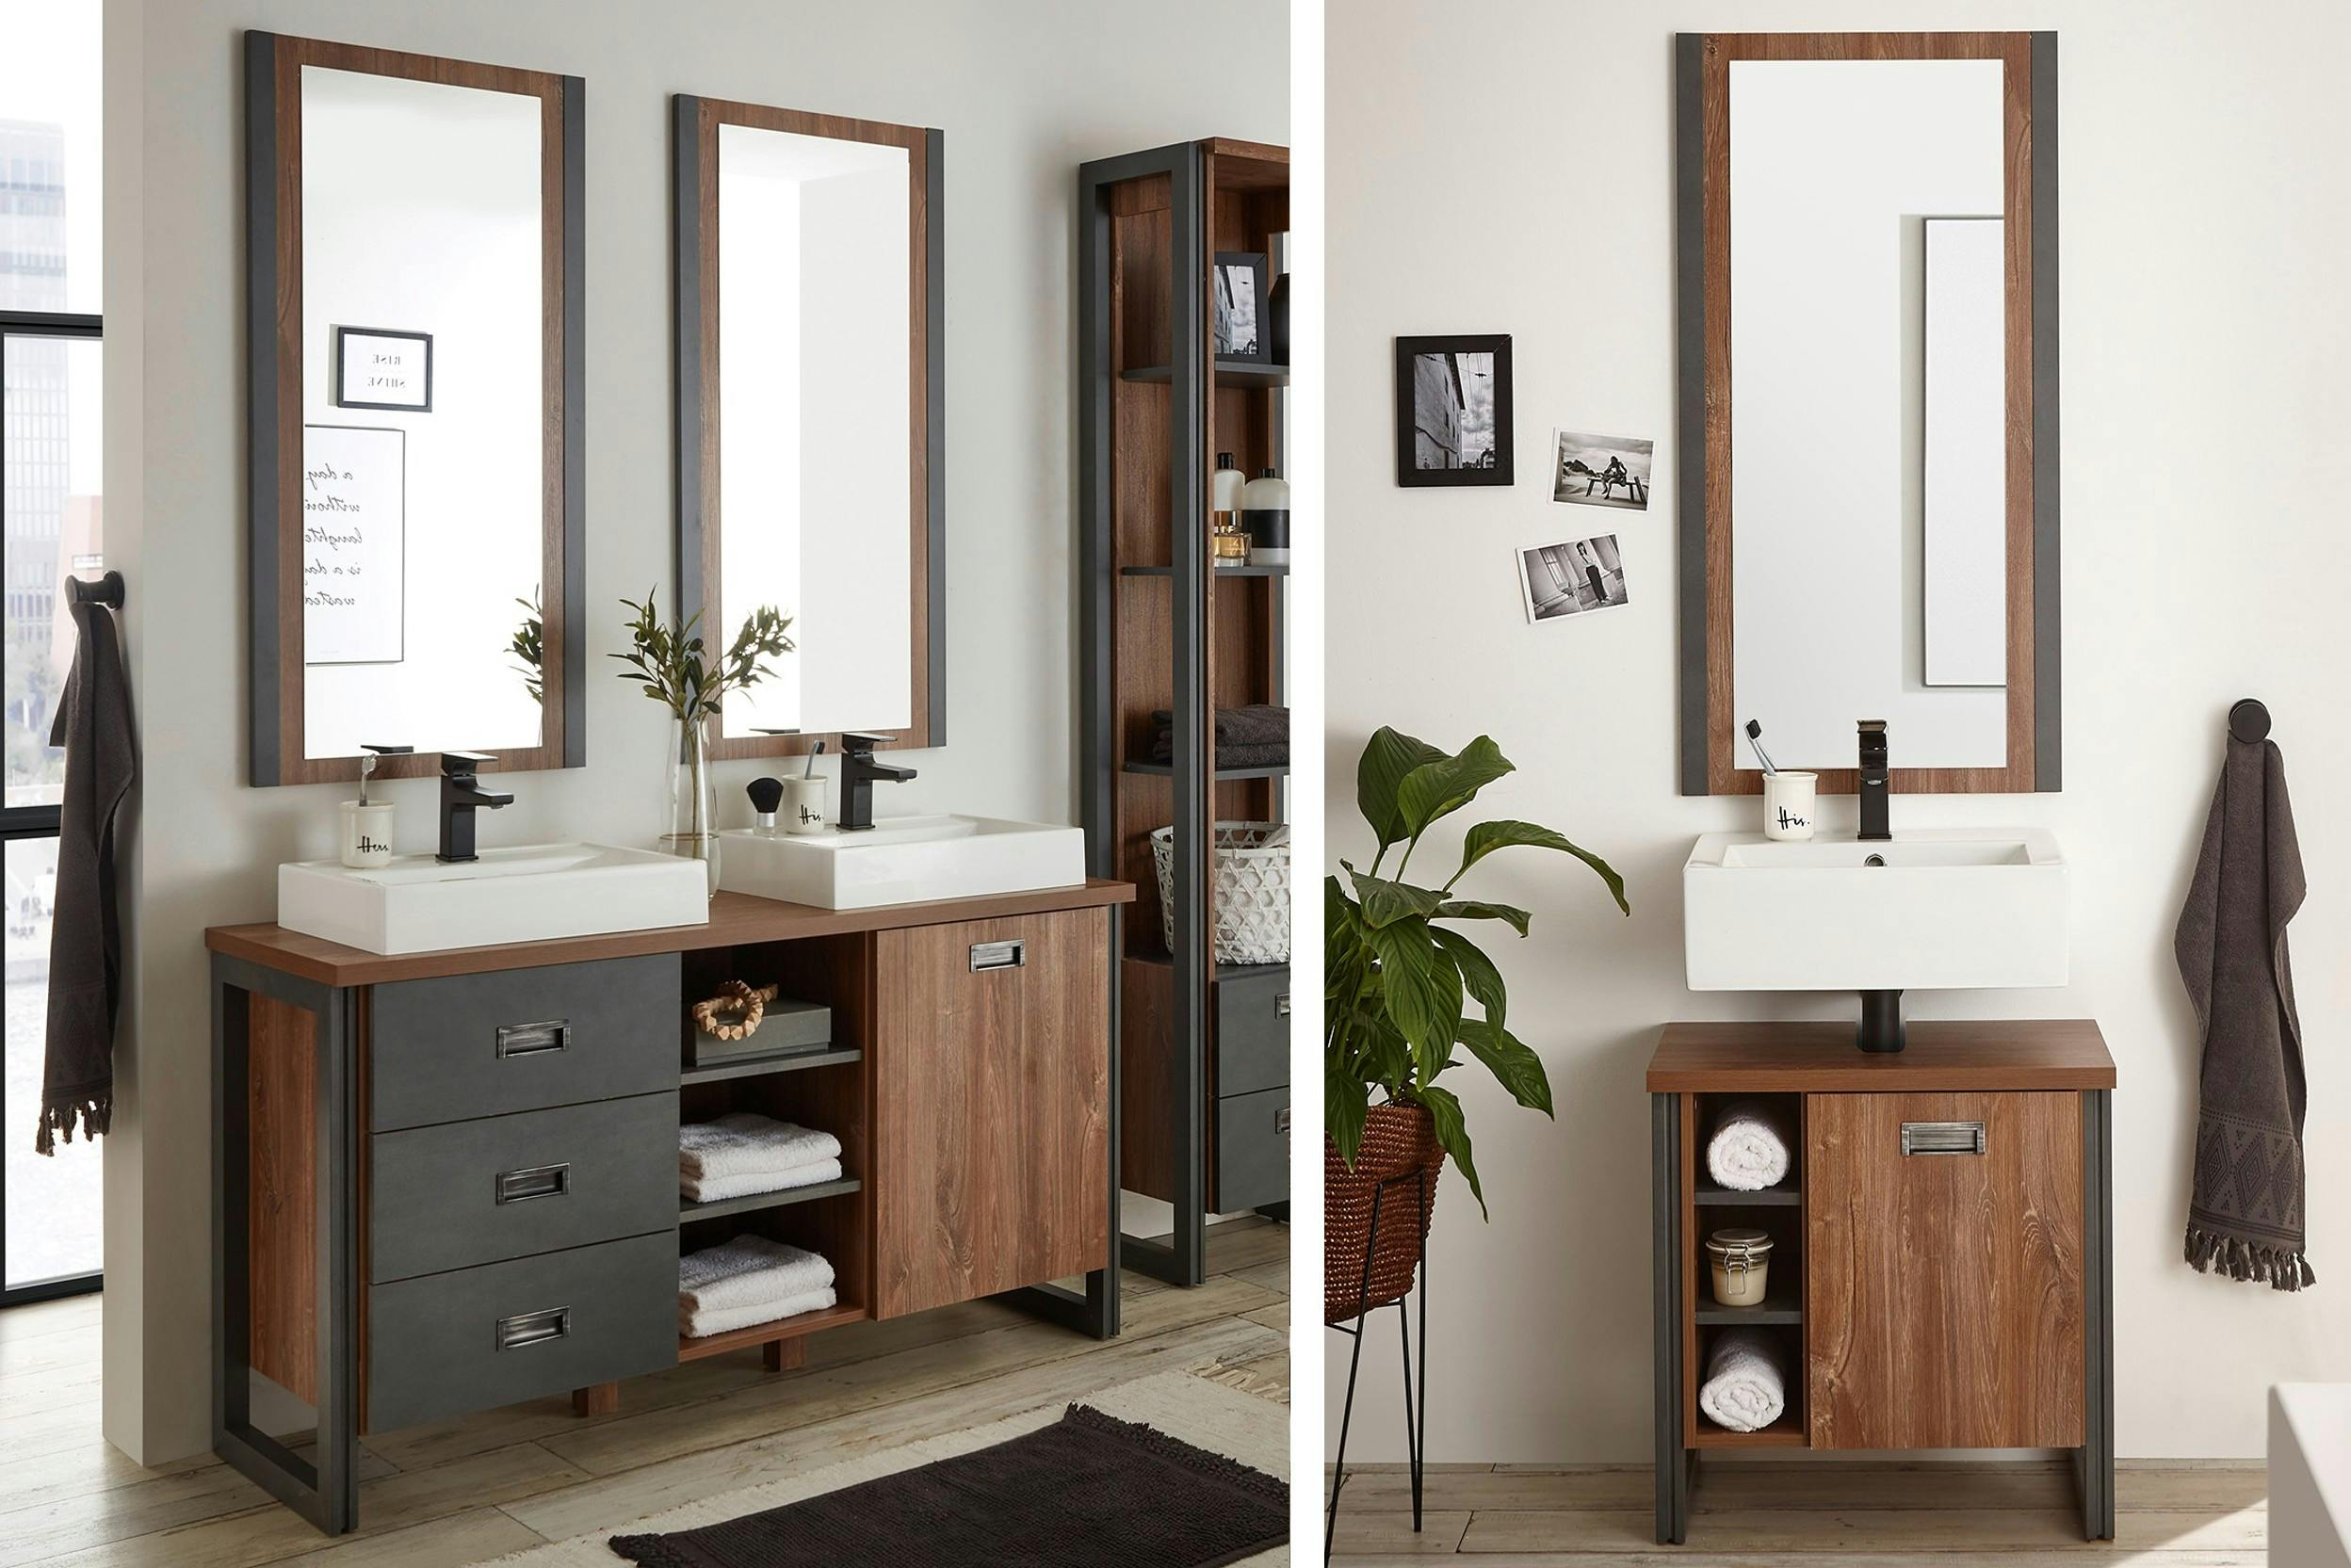 Combo de deux photos de salles de bain style industriel, avec meubles et miroirs